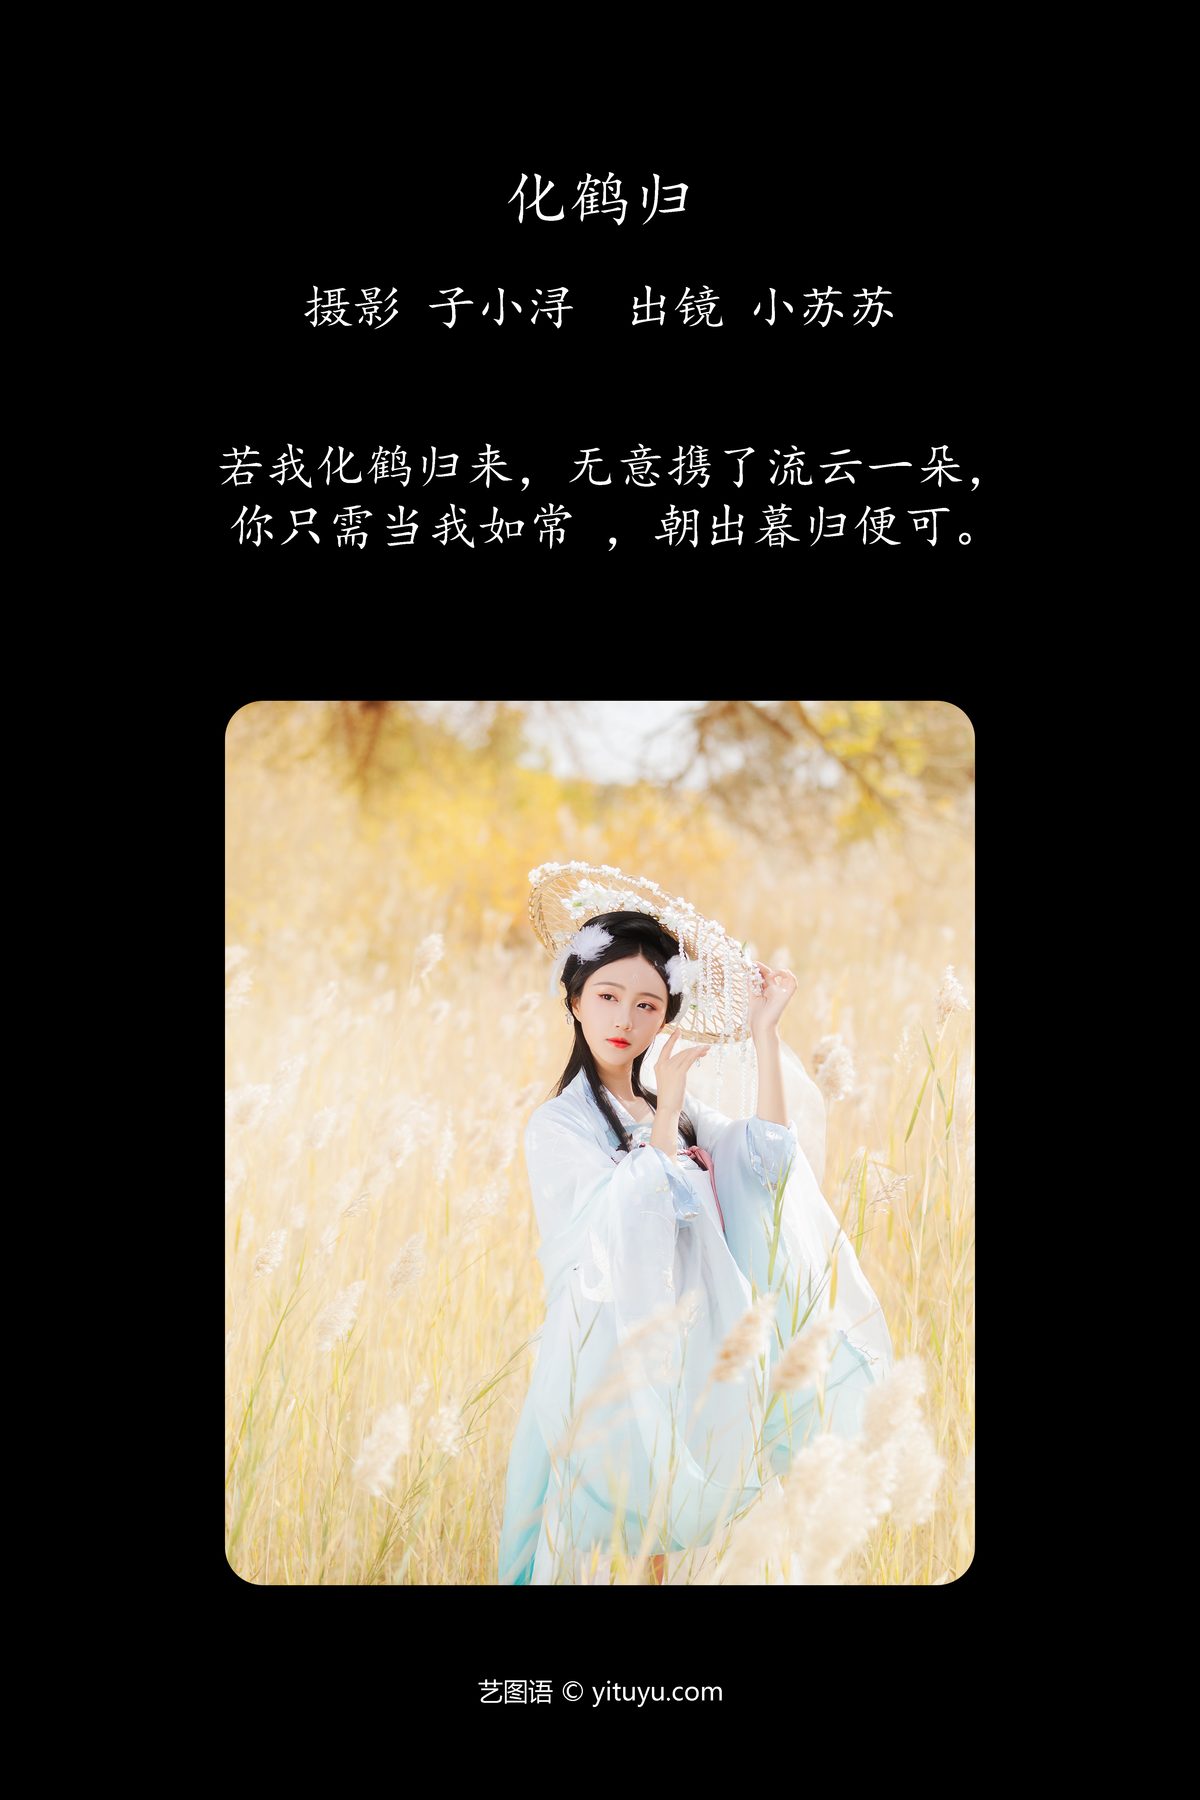 YiTuYu艺图语 Vol 4221 Qi Luo Sheng De Xiao Su Su 0001 2414435090.jpg